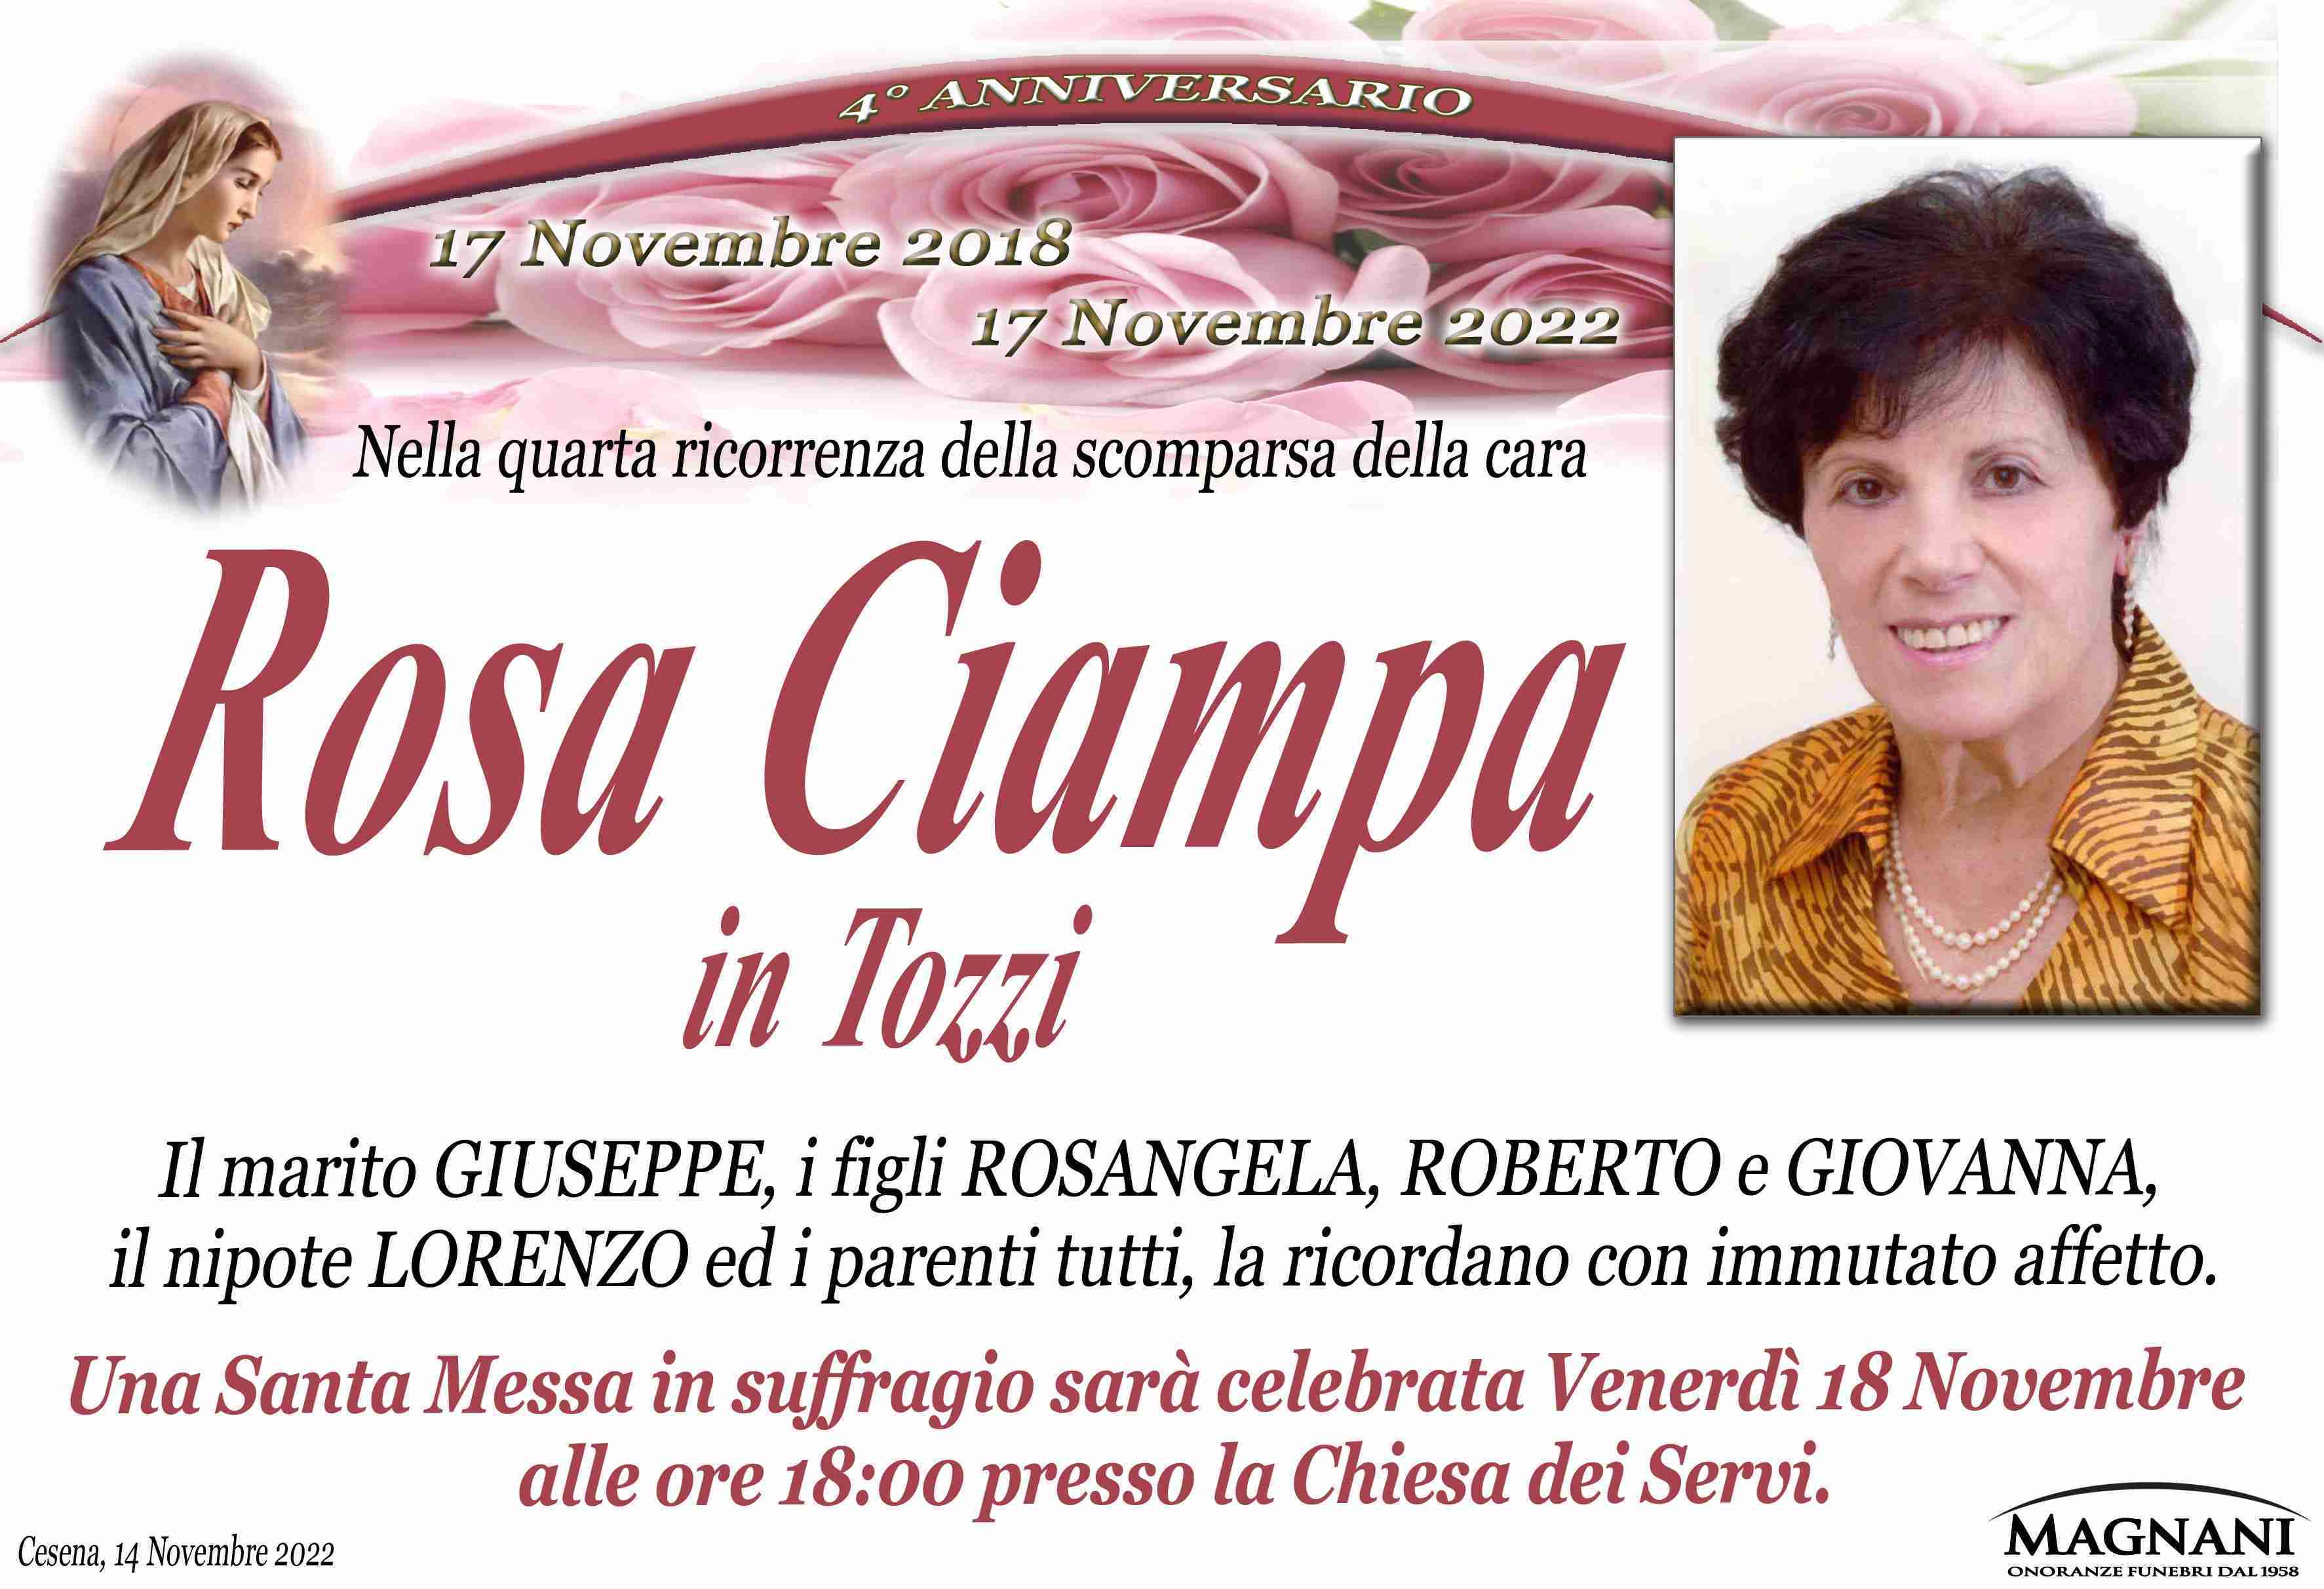 Rosa Ciampa